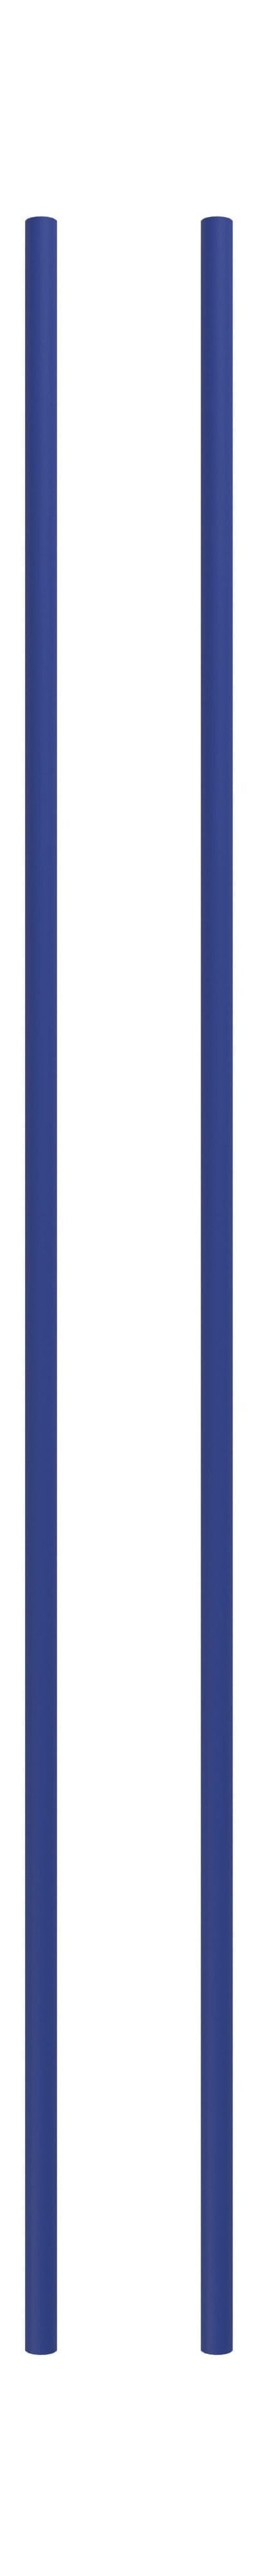 Moebe -Regalsystem/Wandregalbein 115 cm tiefblau, 2 Set von 2